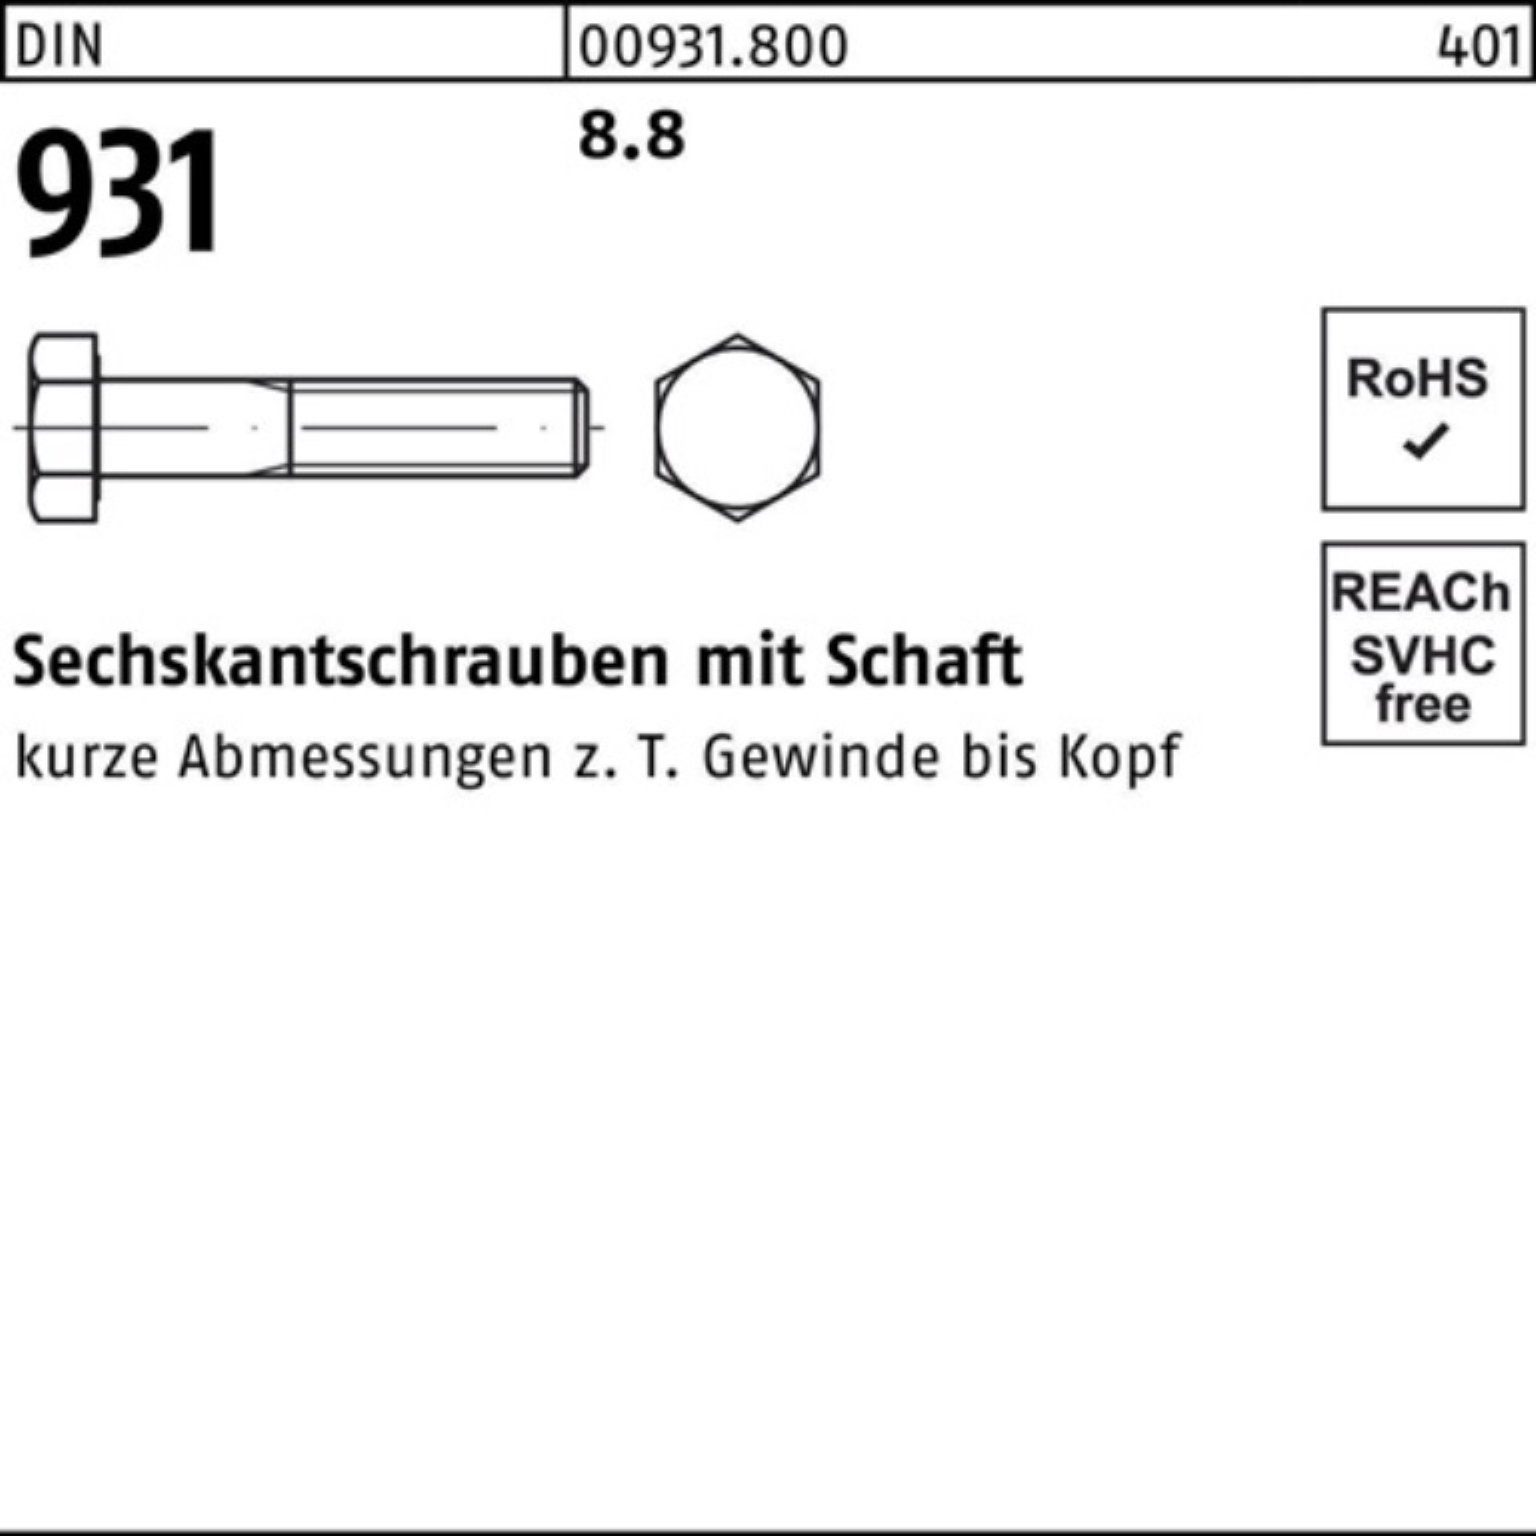 Reyher Sechskantschraube 100er Pack Sechskantschraube 25 Schaft 140 8.8 931 DIN DIN Stück M18x